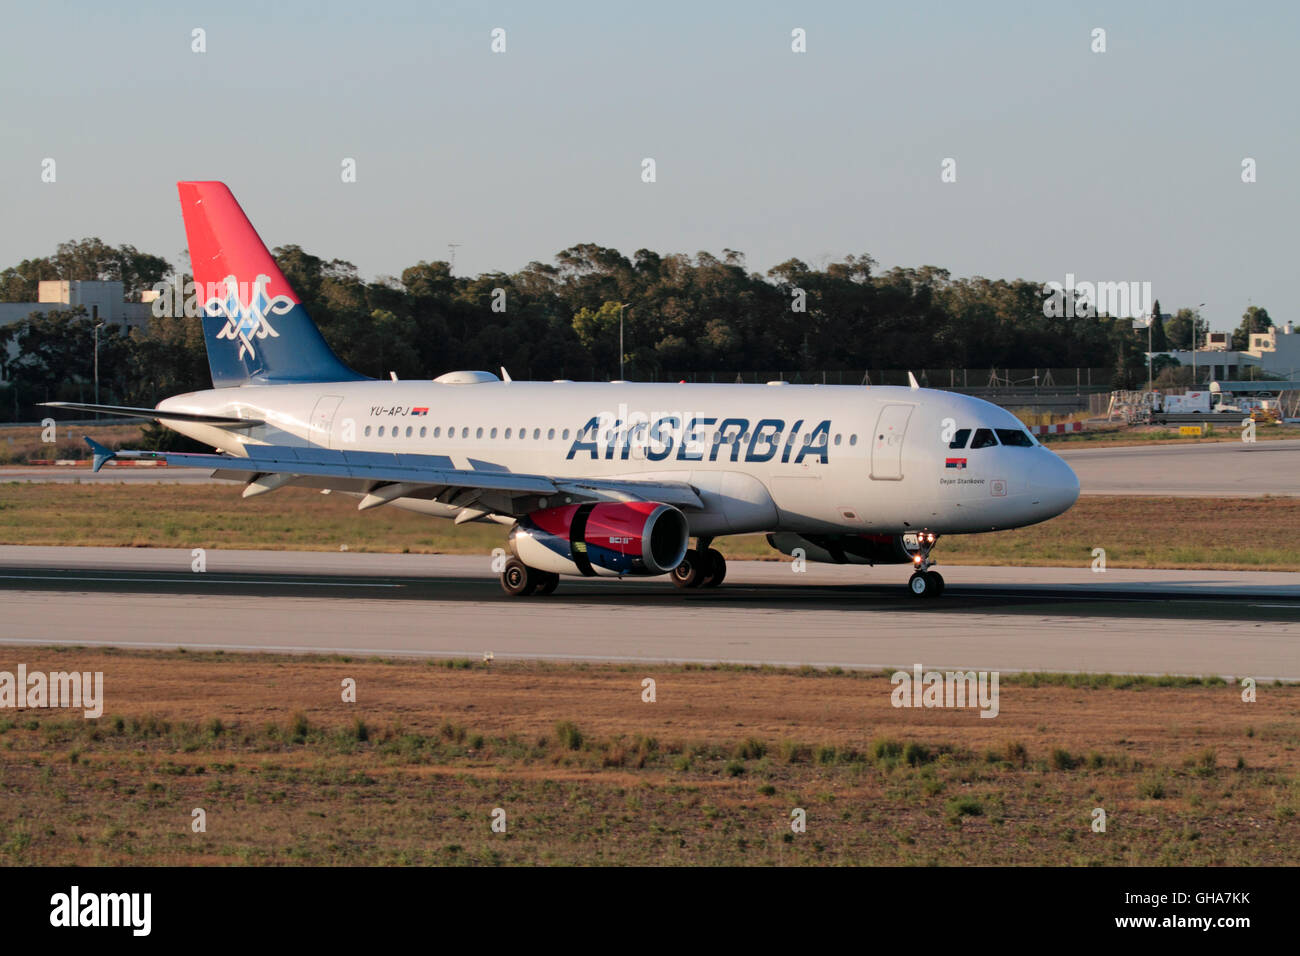 Aviazione commerciale e i viaggi aerei. Aria Serbia Airbus A319 narrowbody aereo di linea in arrivo a Malta al tramonto Foto Stock